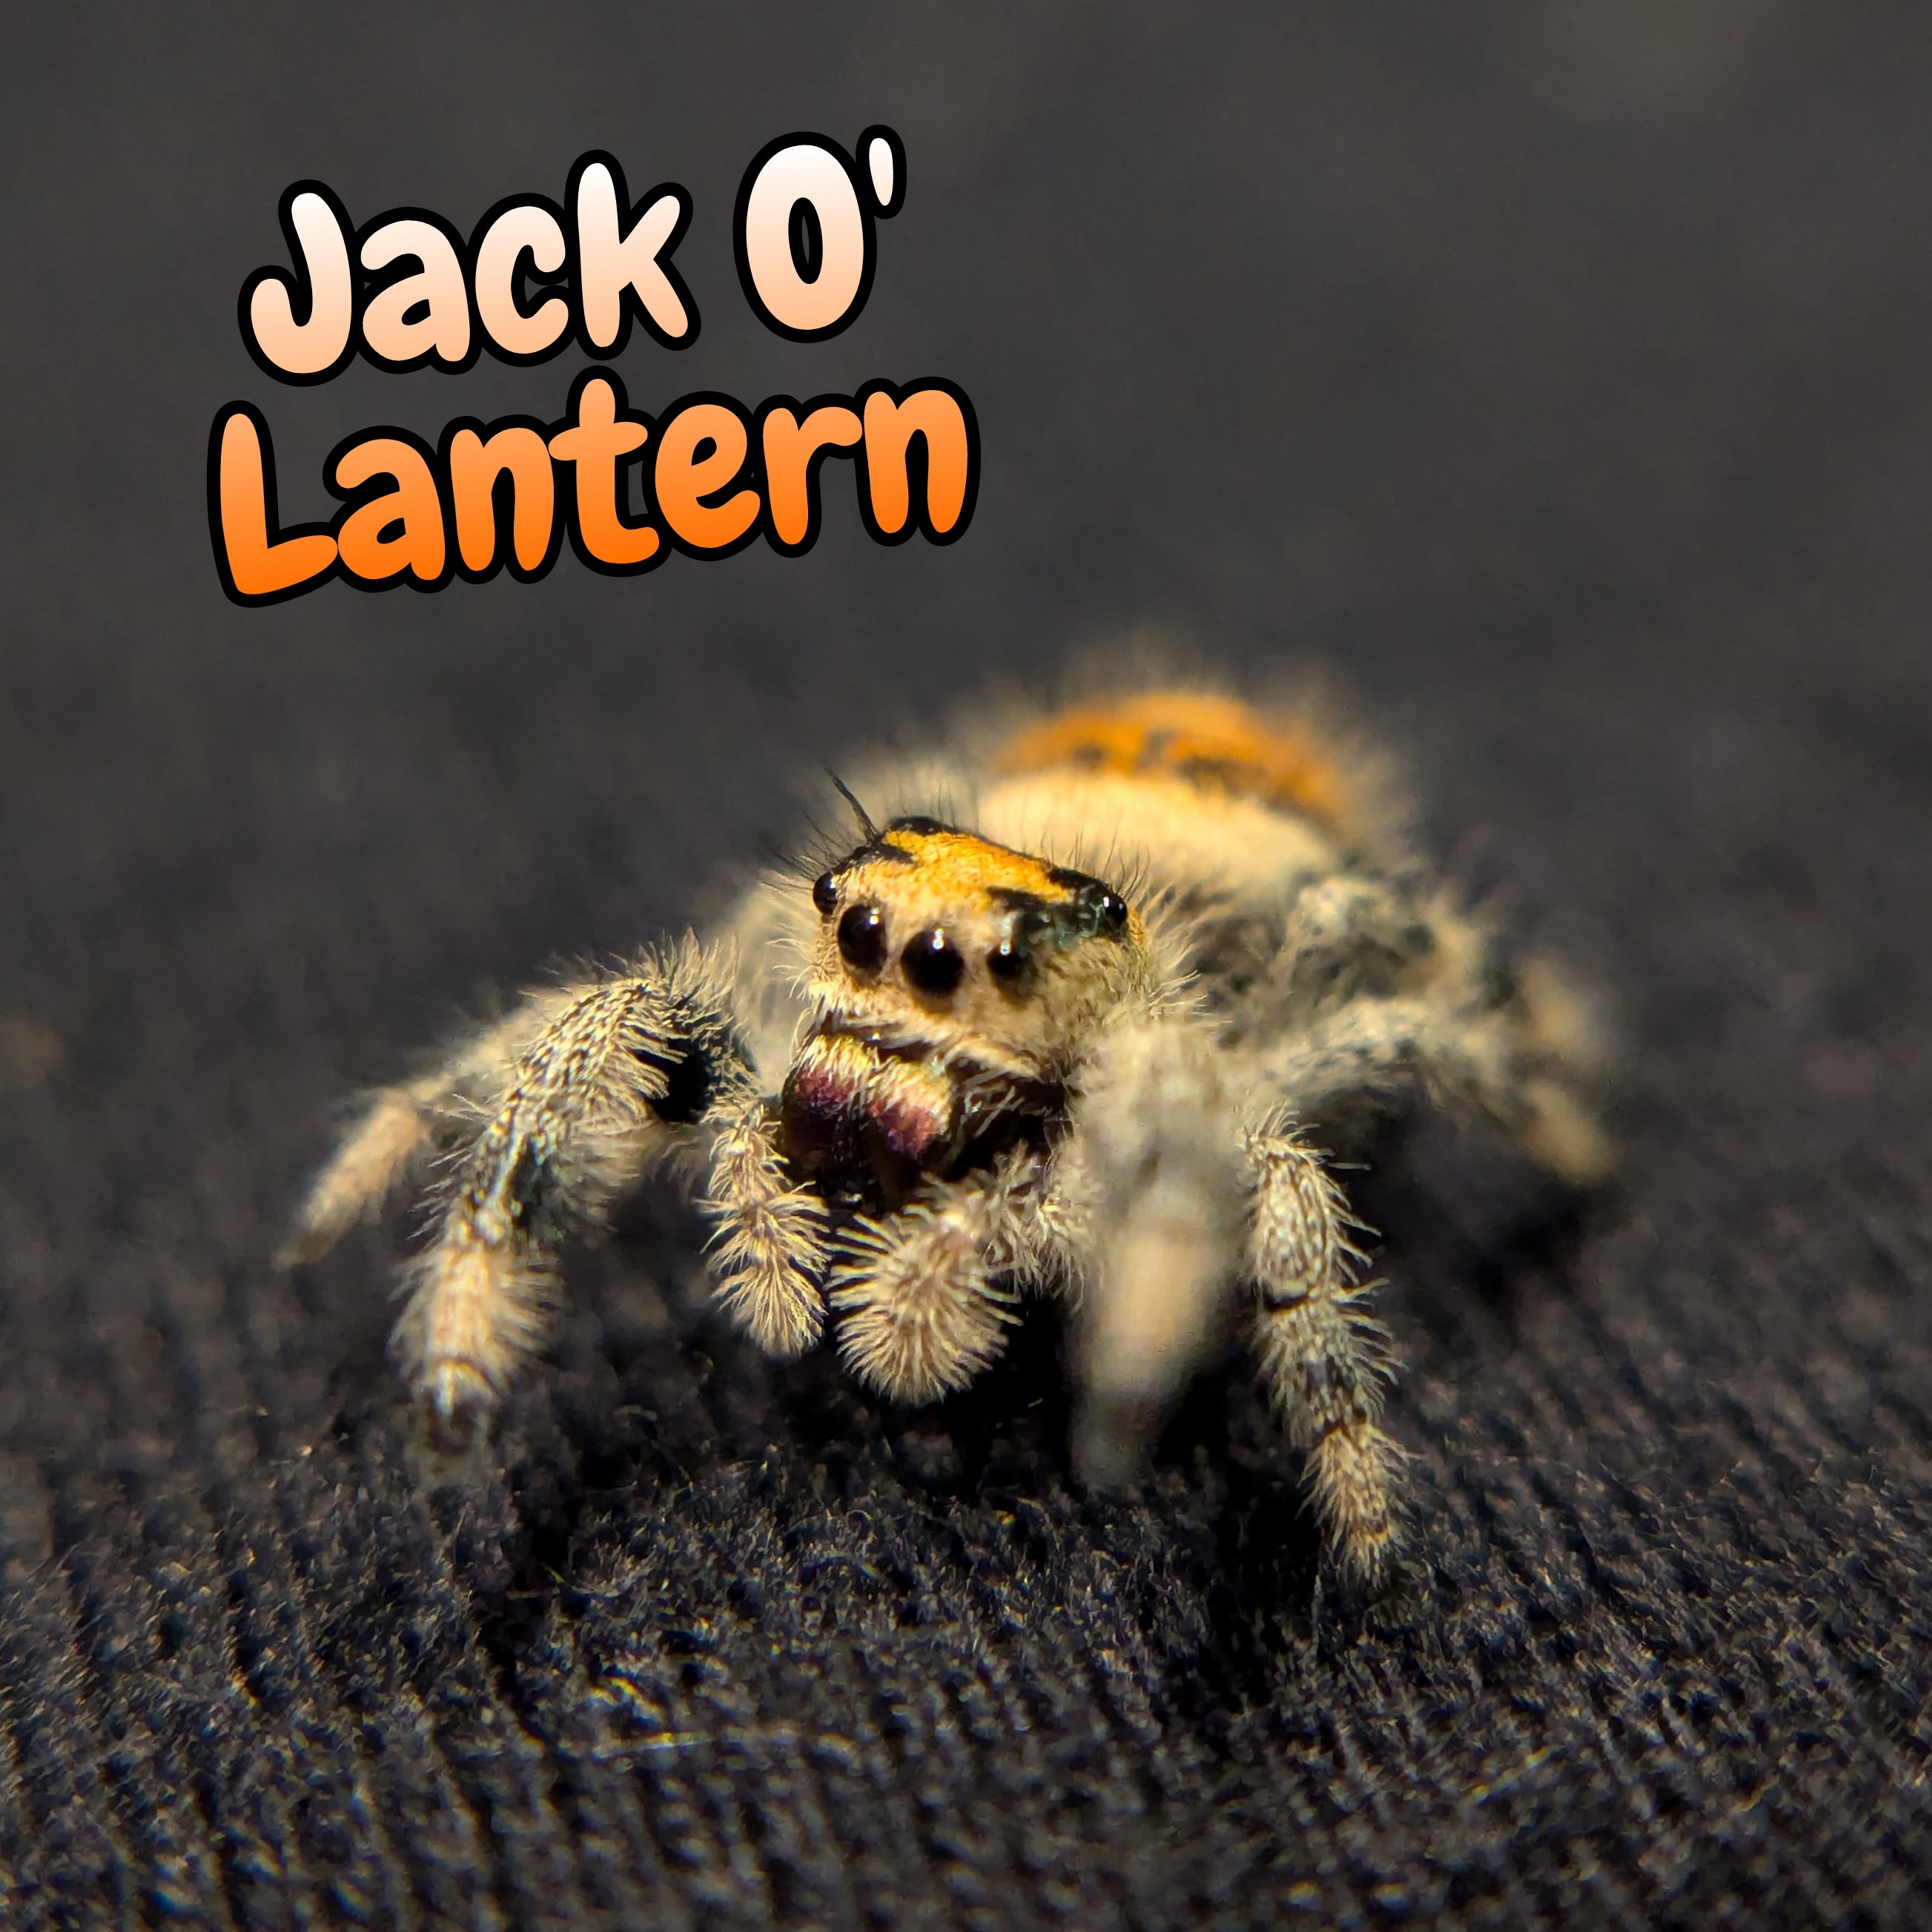 Regal Jumping Spider "Jack O' Lantern"